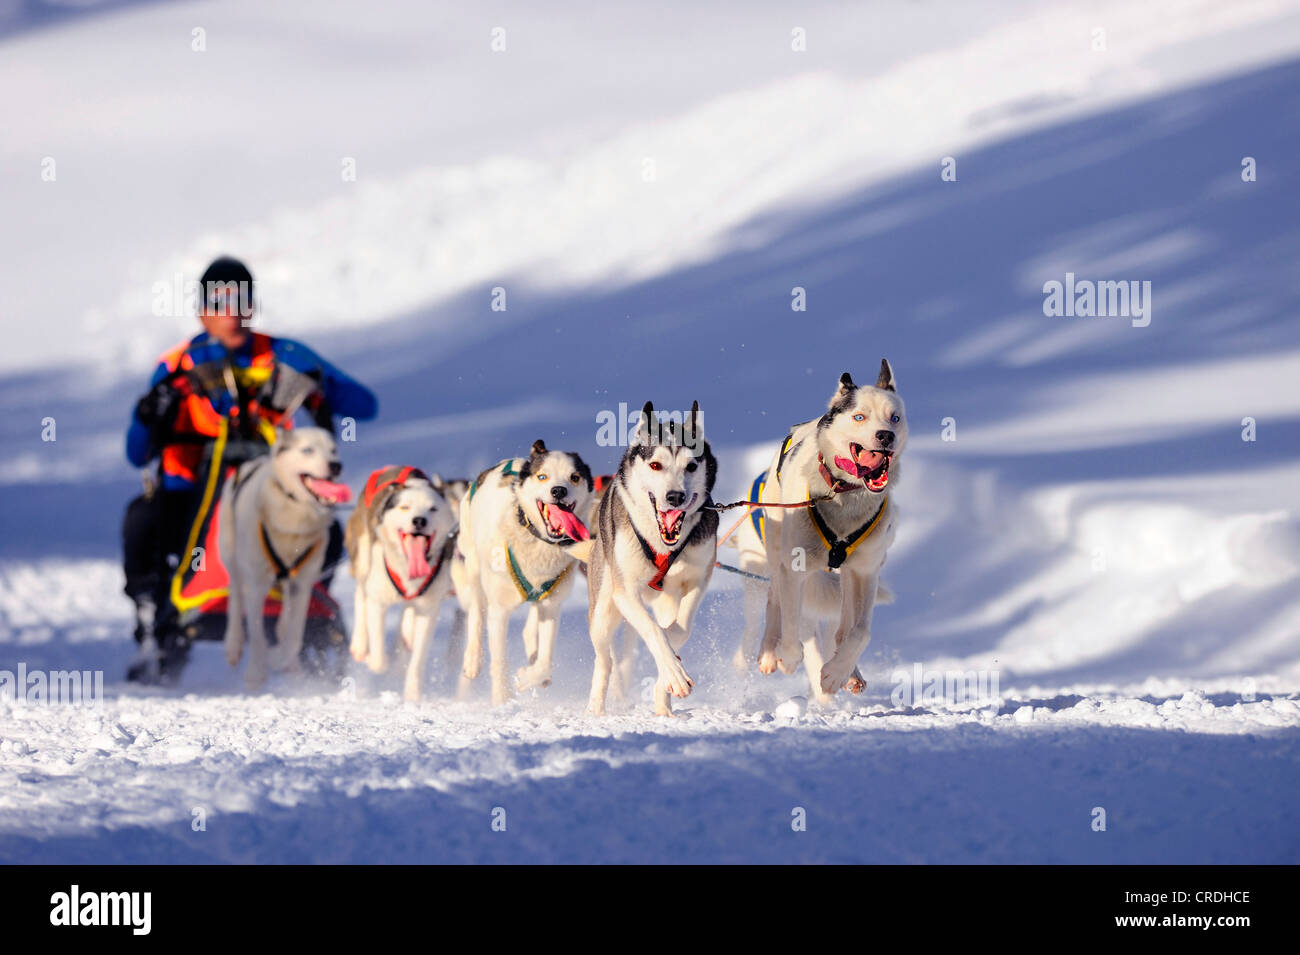 L'équipe de chiens de traîneau sur la neige, au 93, Allgaeu, Bavaria, Germany, Europe Banque D'Images